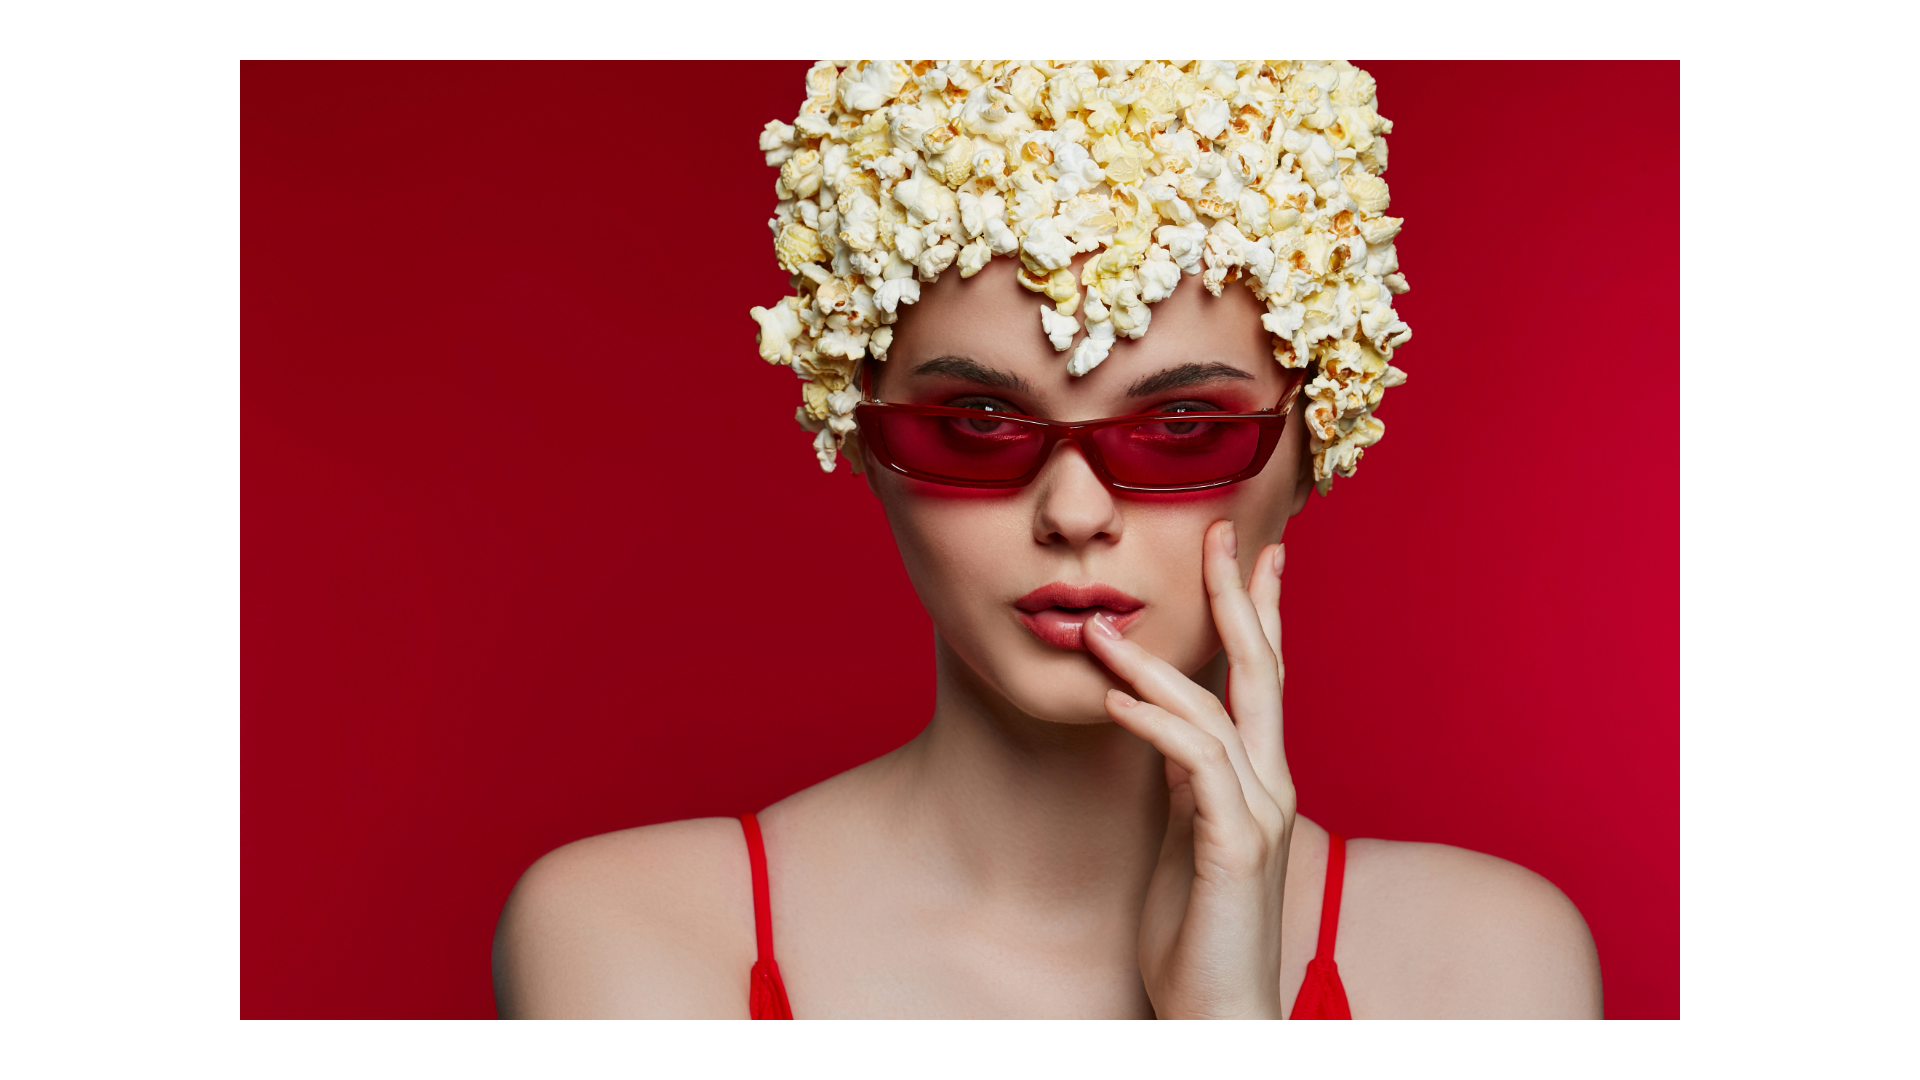 Popcorn, food or fashion?